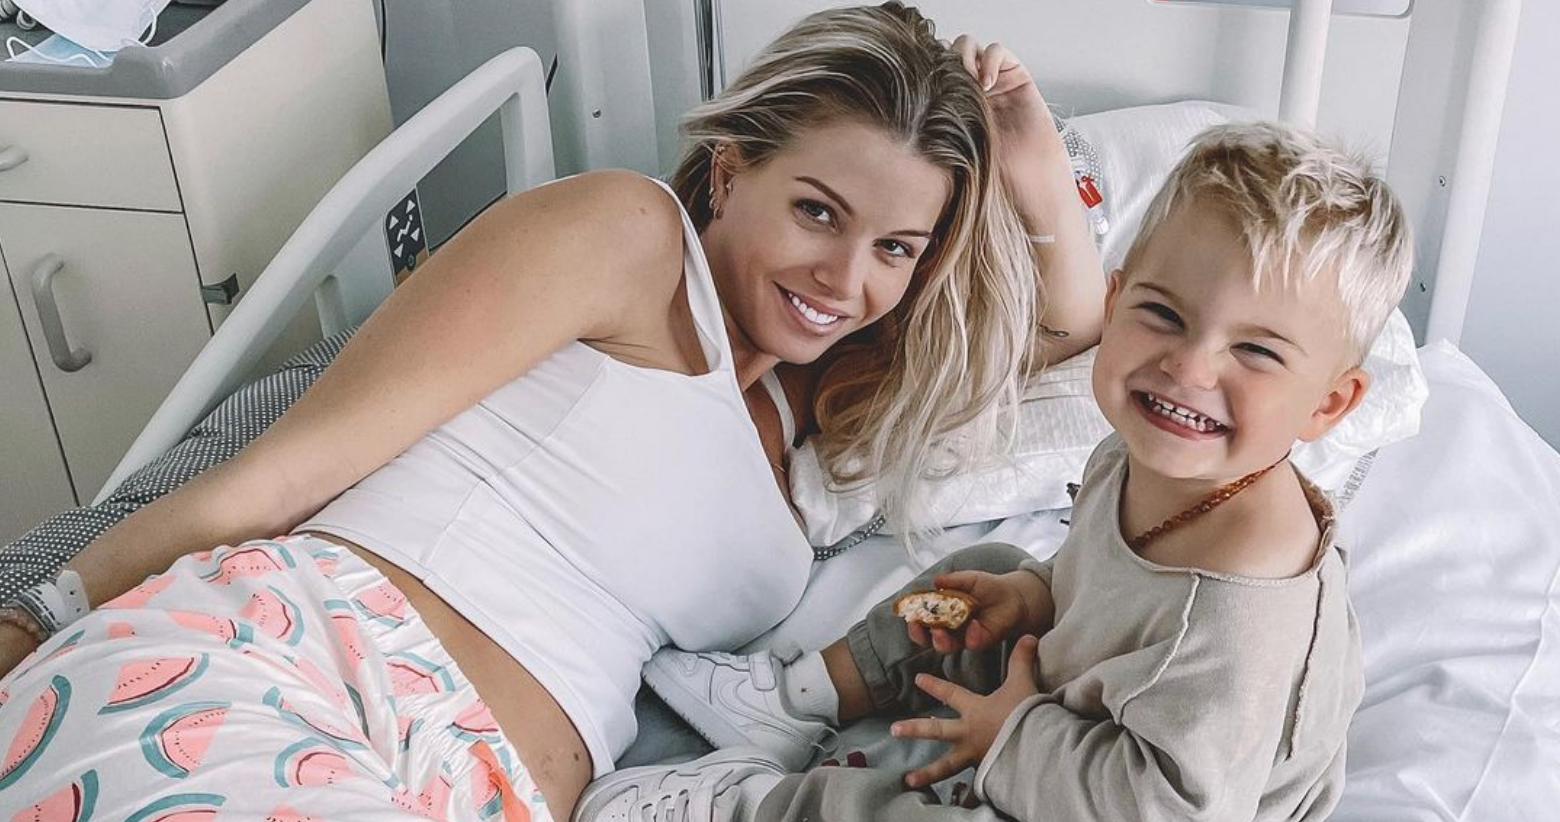  Jessica Thivenin avec son fils Maylone à l'hôpital @ Instagram